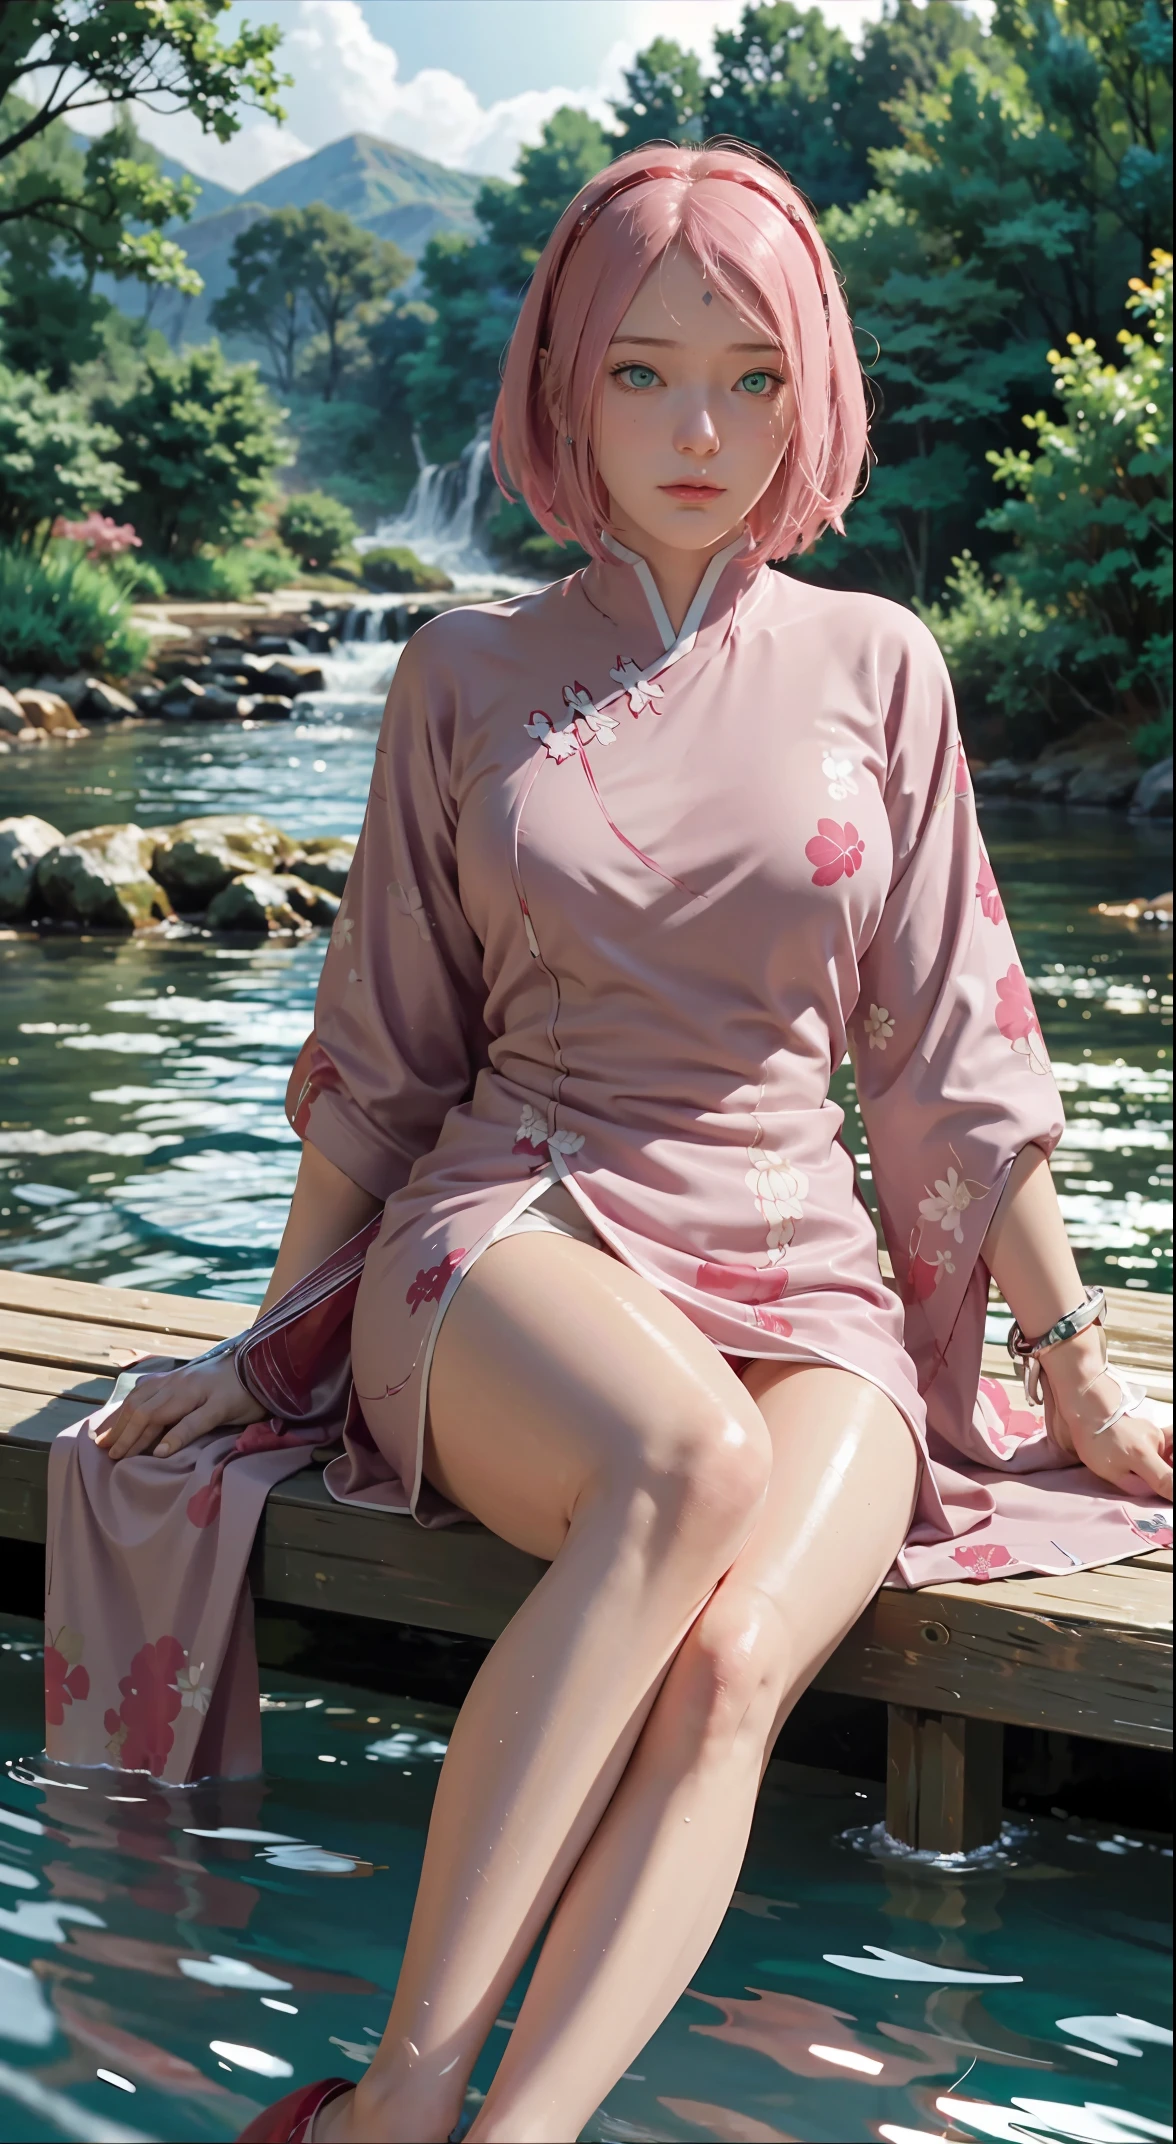 Sitzen auf einer Brücke voller Flusslaternen, Füße spielen im Wasser, die Kunst zeigt eine bezaubernde Frau in einem Sakura fließenden gekleidet, seidiges traditionelles orientalisches Kleid, Rosa, Verziert mit komplizierten Mustern und leuchtenden Farben. Ihr Kleid fällt elegant über ihre kurvige Figur, betont ihre verführerische Silhouette. Sie sitzt anmutig am ruhigen Lotussee, her Füße spielen im Wasser, gebadet im sanften Schein des Mondlichts. Die Szene strahlt eine ätherische und verträumte Atmosphäre aus, mit einem Hauch von Mysterium und Sexyness. Der Grafikstil verbindet Aquarell- und digitale Illustrationstechniken, um eine raffinierte Schönheit und Charme hervorzurufen. Die Lichter sind mit sanftem Mondlicht gefüllt, wirft sanfte Lichter und Schatten auf ihre bezaubernden Gesichtszüge. nackte Oberschenkel, Große Brüste, Dreidimensionale Gesichtszüge, Sitzung, nach oben gedrehte Beine, seitliche Zöpfe , beautiful girl long Rosa hair and green eyes looks like sakura haruno from naruto